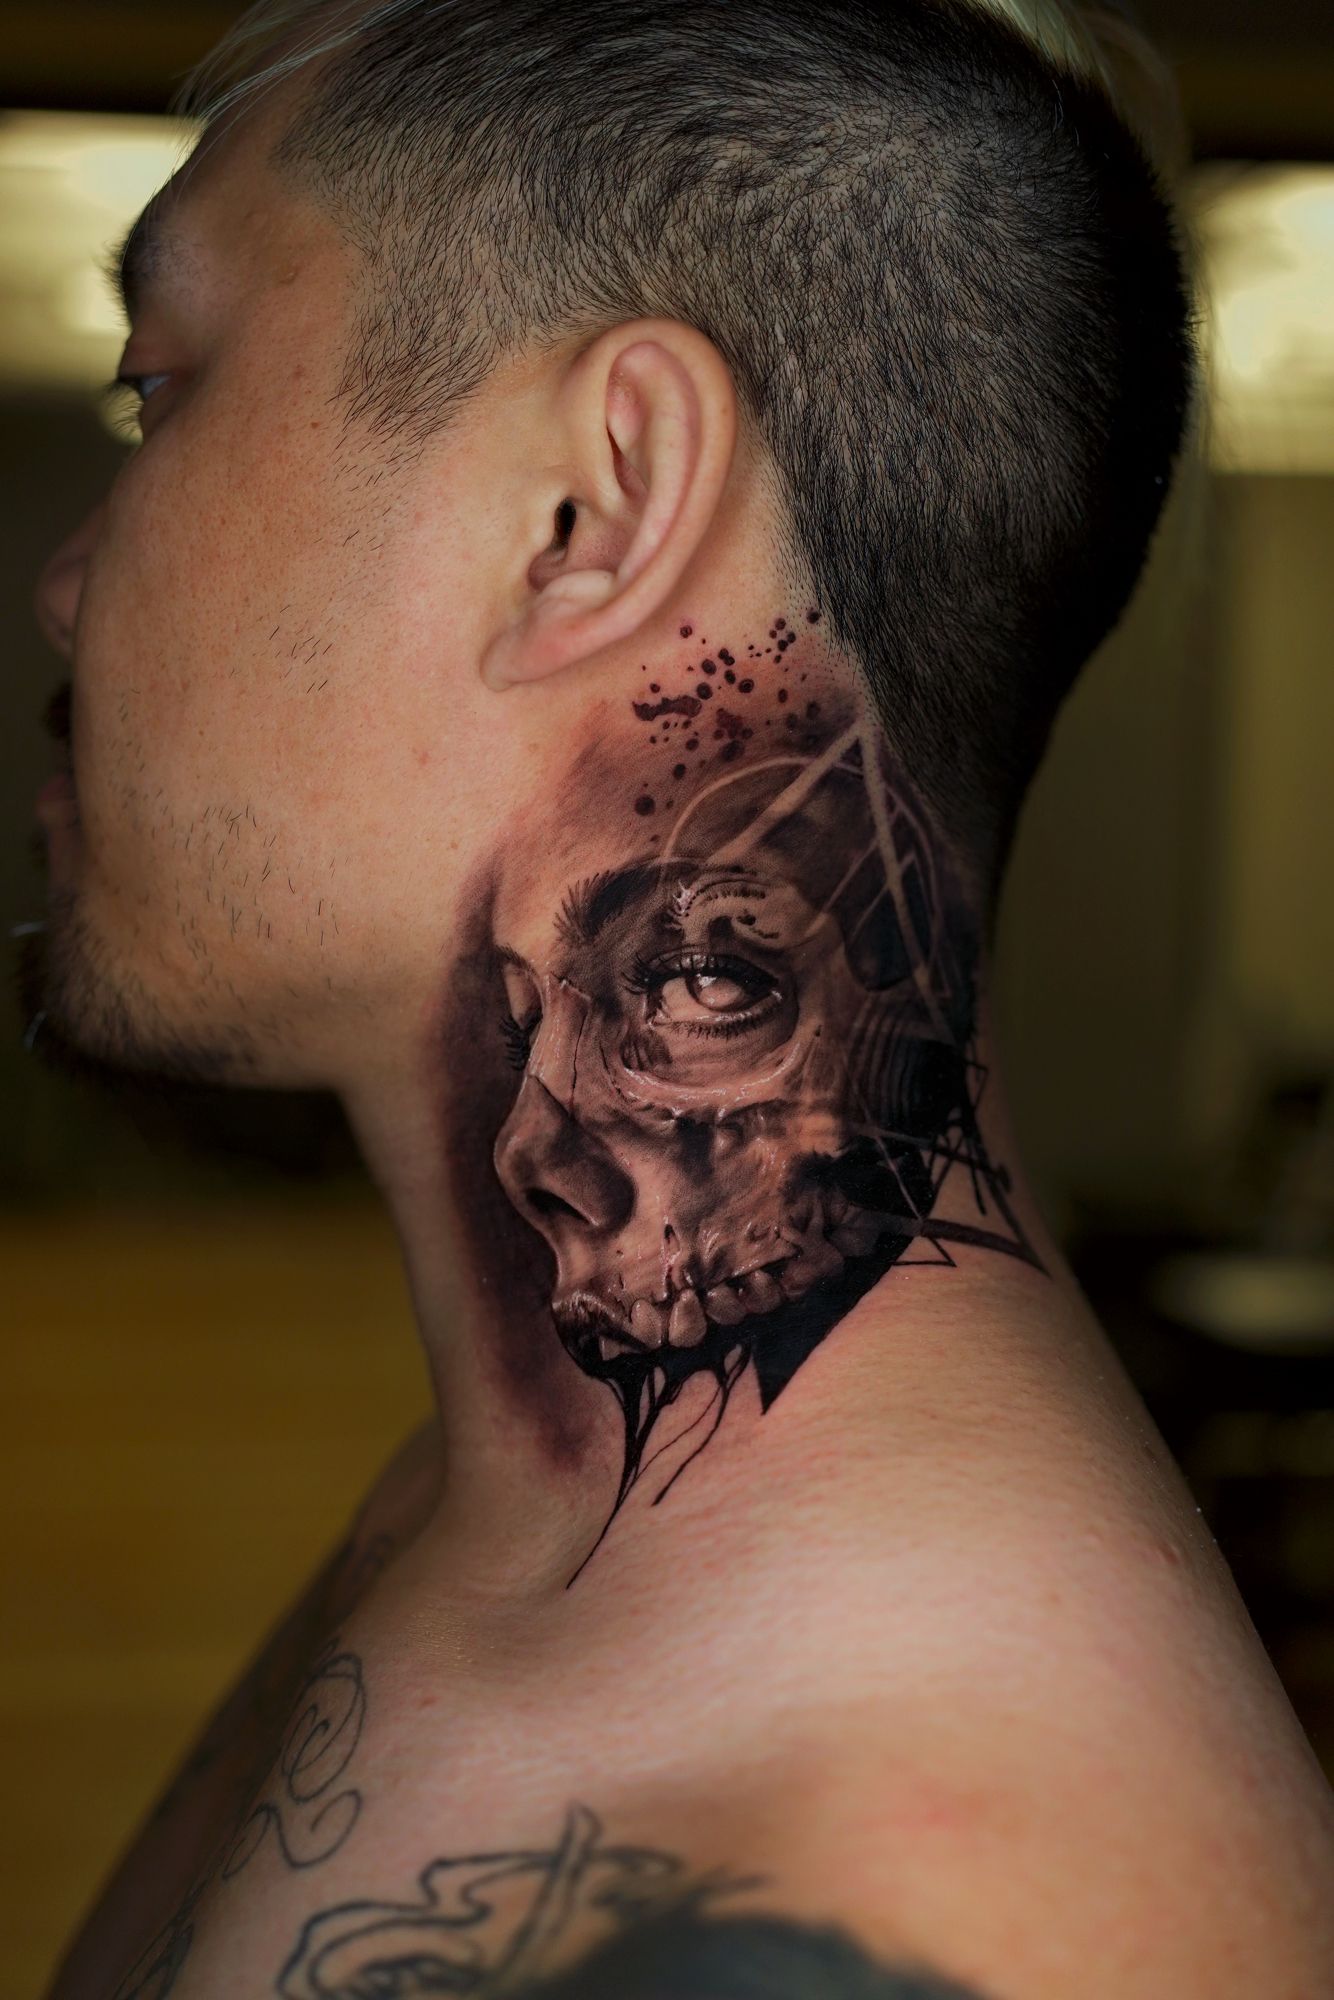 Punk Skull Tattoo Stickers Lasting Tattoo Art Temporary Tattoos Waterproof  Neck Chest Skeleton Tattoo Gangs Hip Hop Fake Tatoo - AliExpress